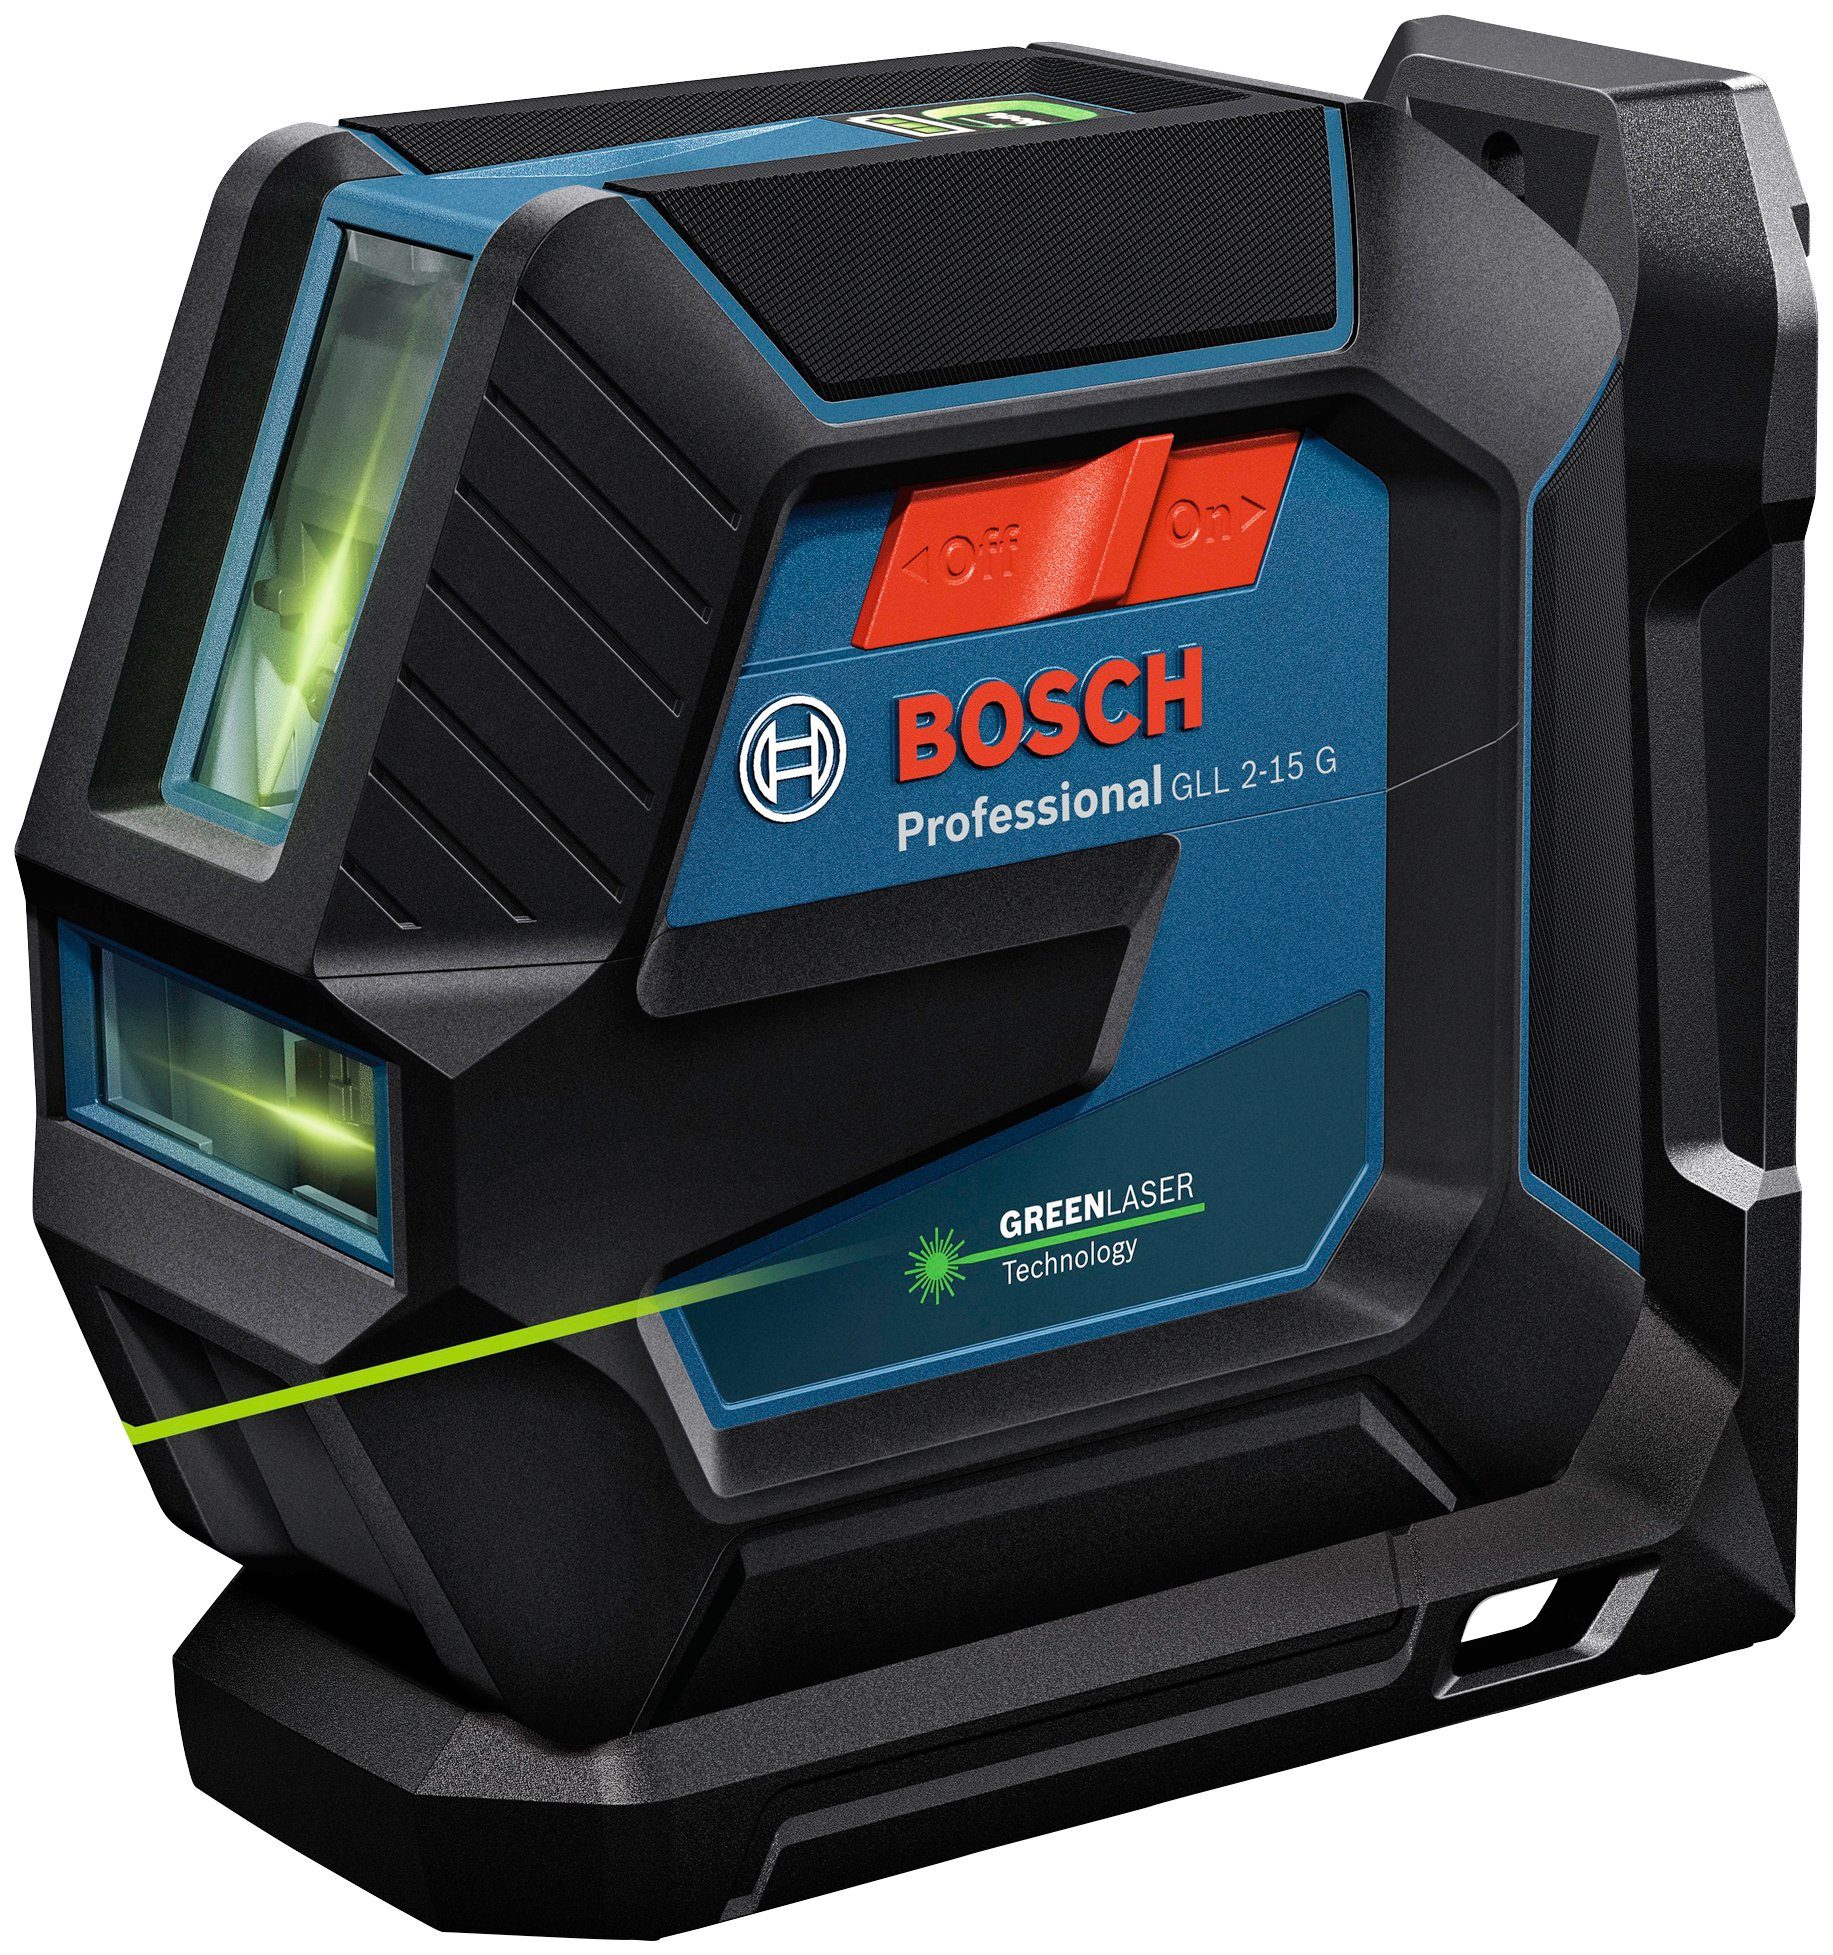 2-15 und Professional Professional, Linienlaser Bosch IP64 Spritzwasserschutz GLL G Staub-